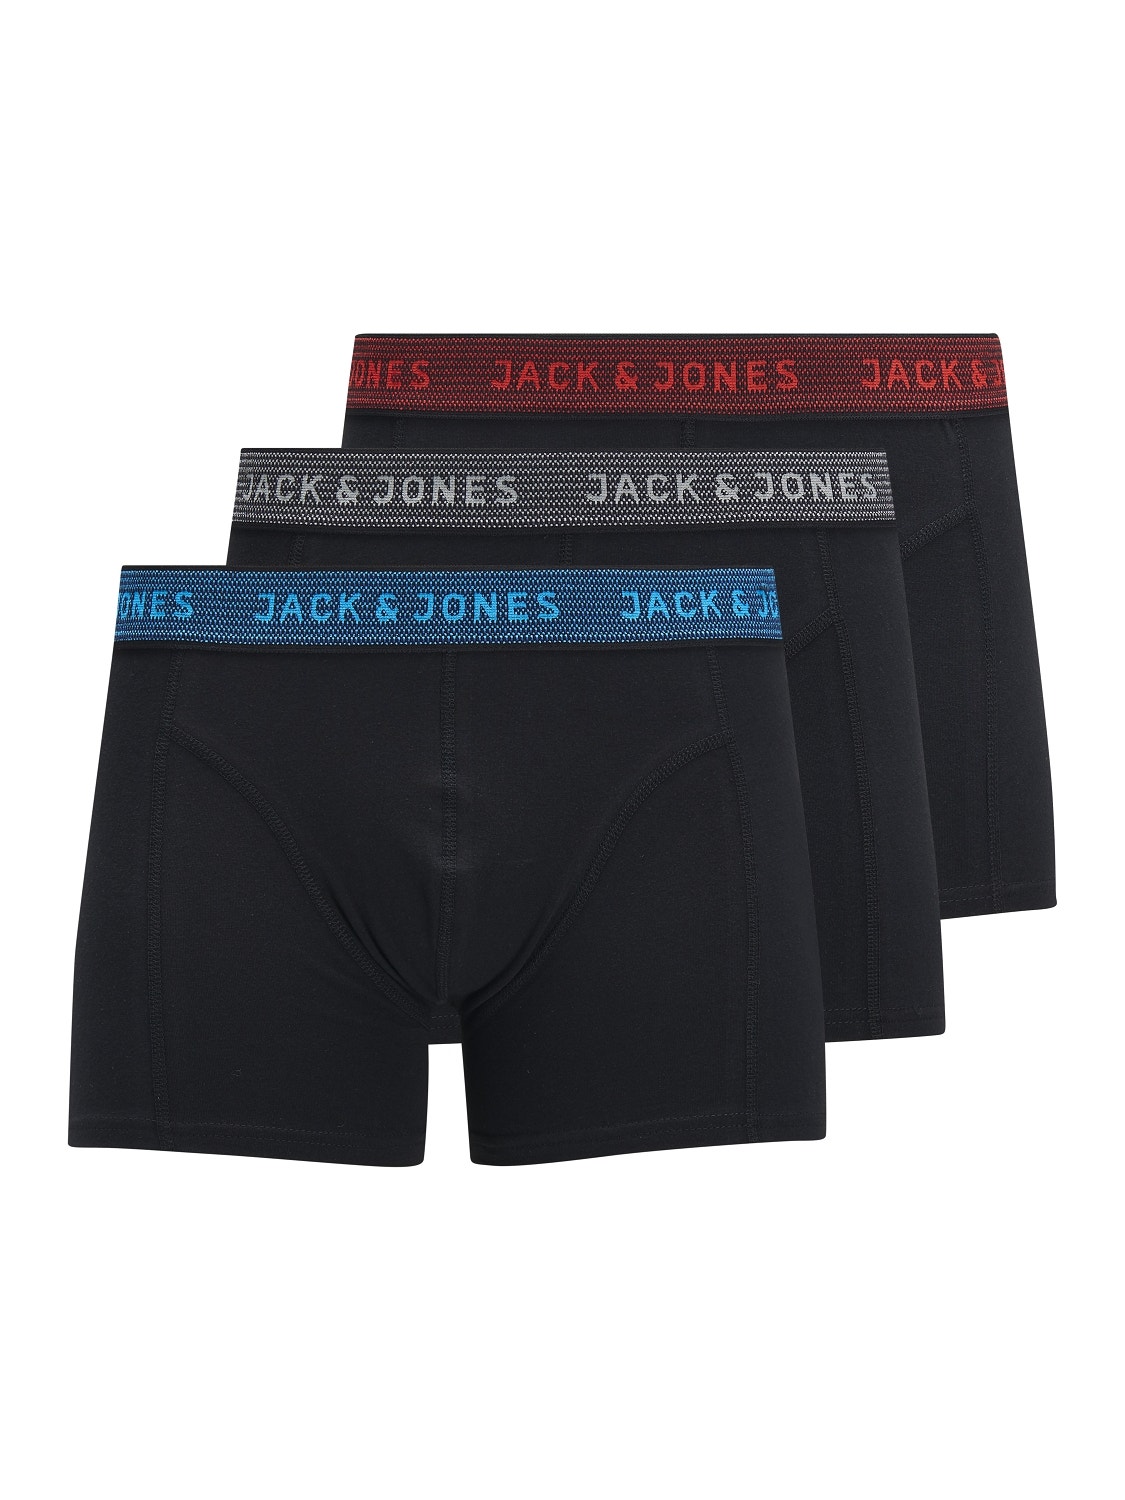 Jack & Jones 3er-pack Boxershorts Für jungs -Asphalt - 12203513